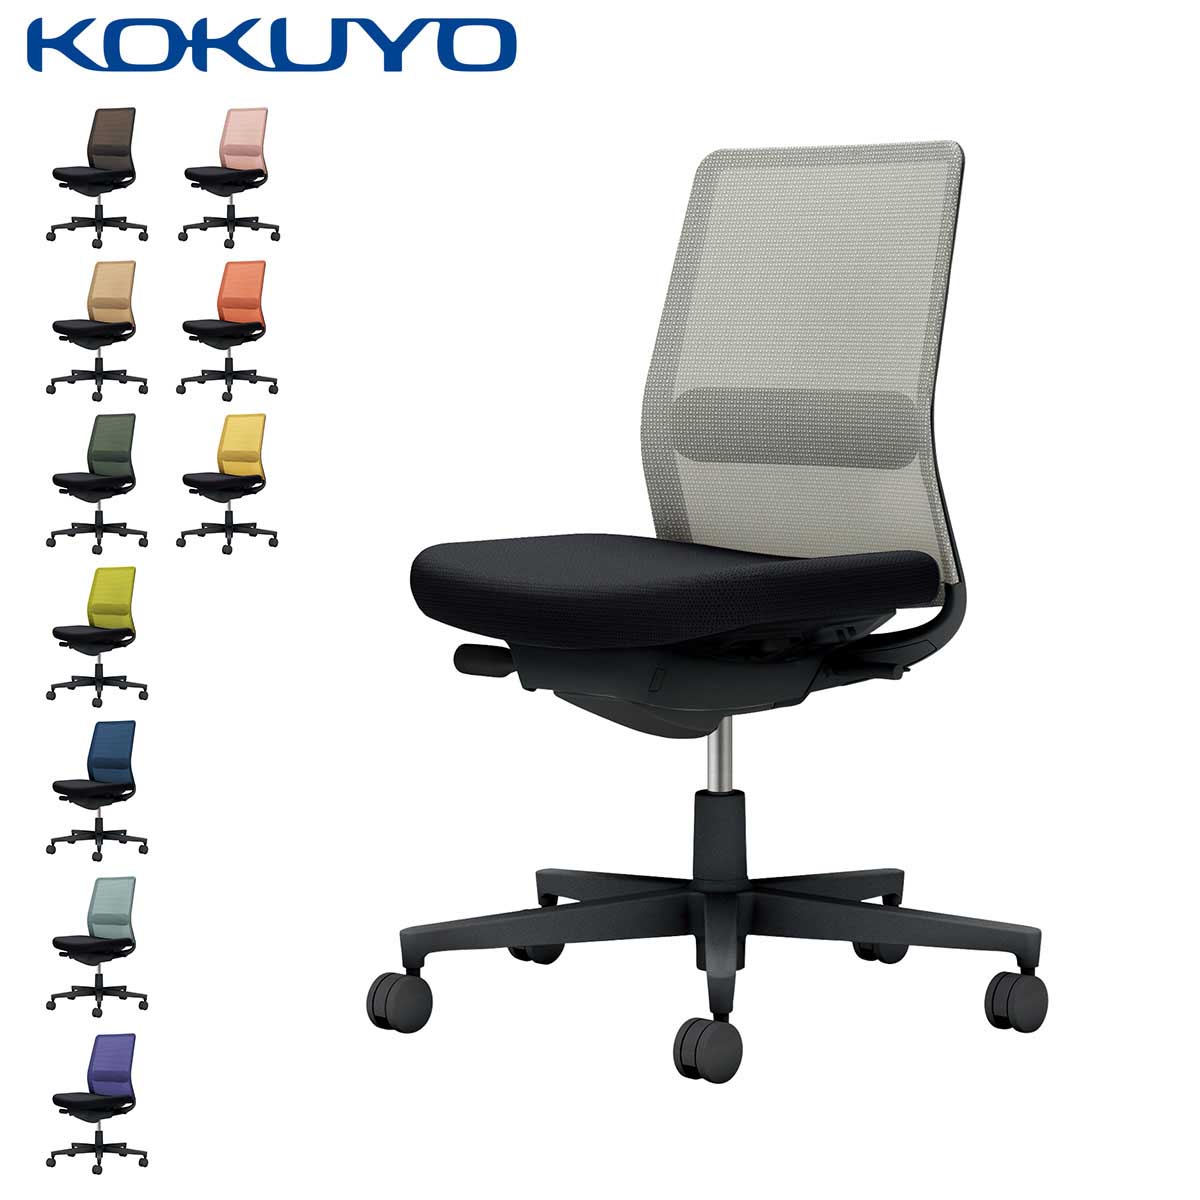 コクヨ デスクチェア オフィスチェア 椅子 Monet モネット C03-B102 背メッシュ 肘なし ランバーサポート 本体/脚ブラック